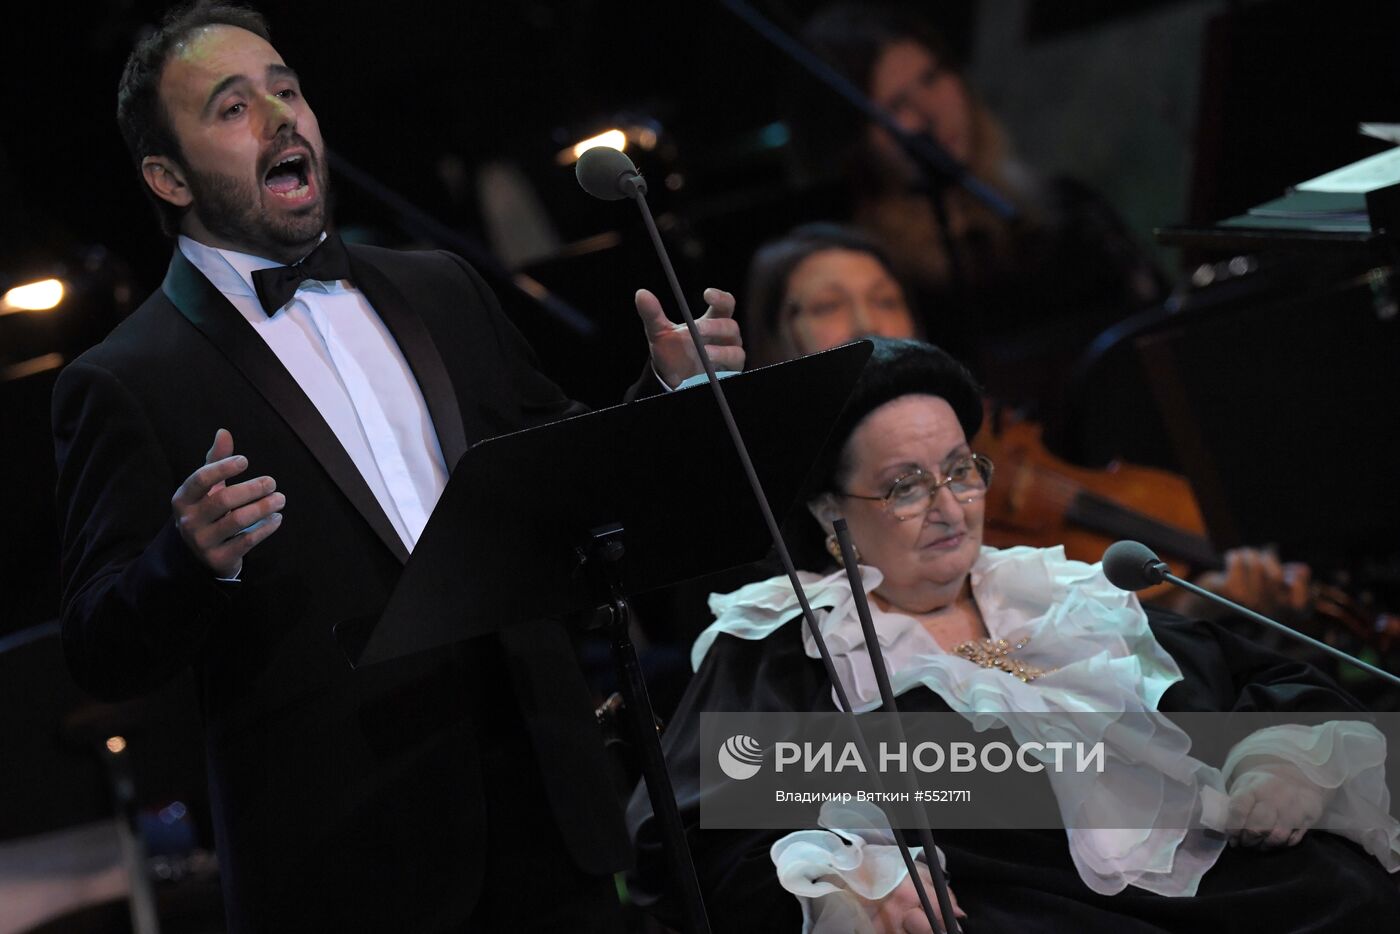 Концерт Монсеррат Кабалье в Кремле